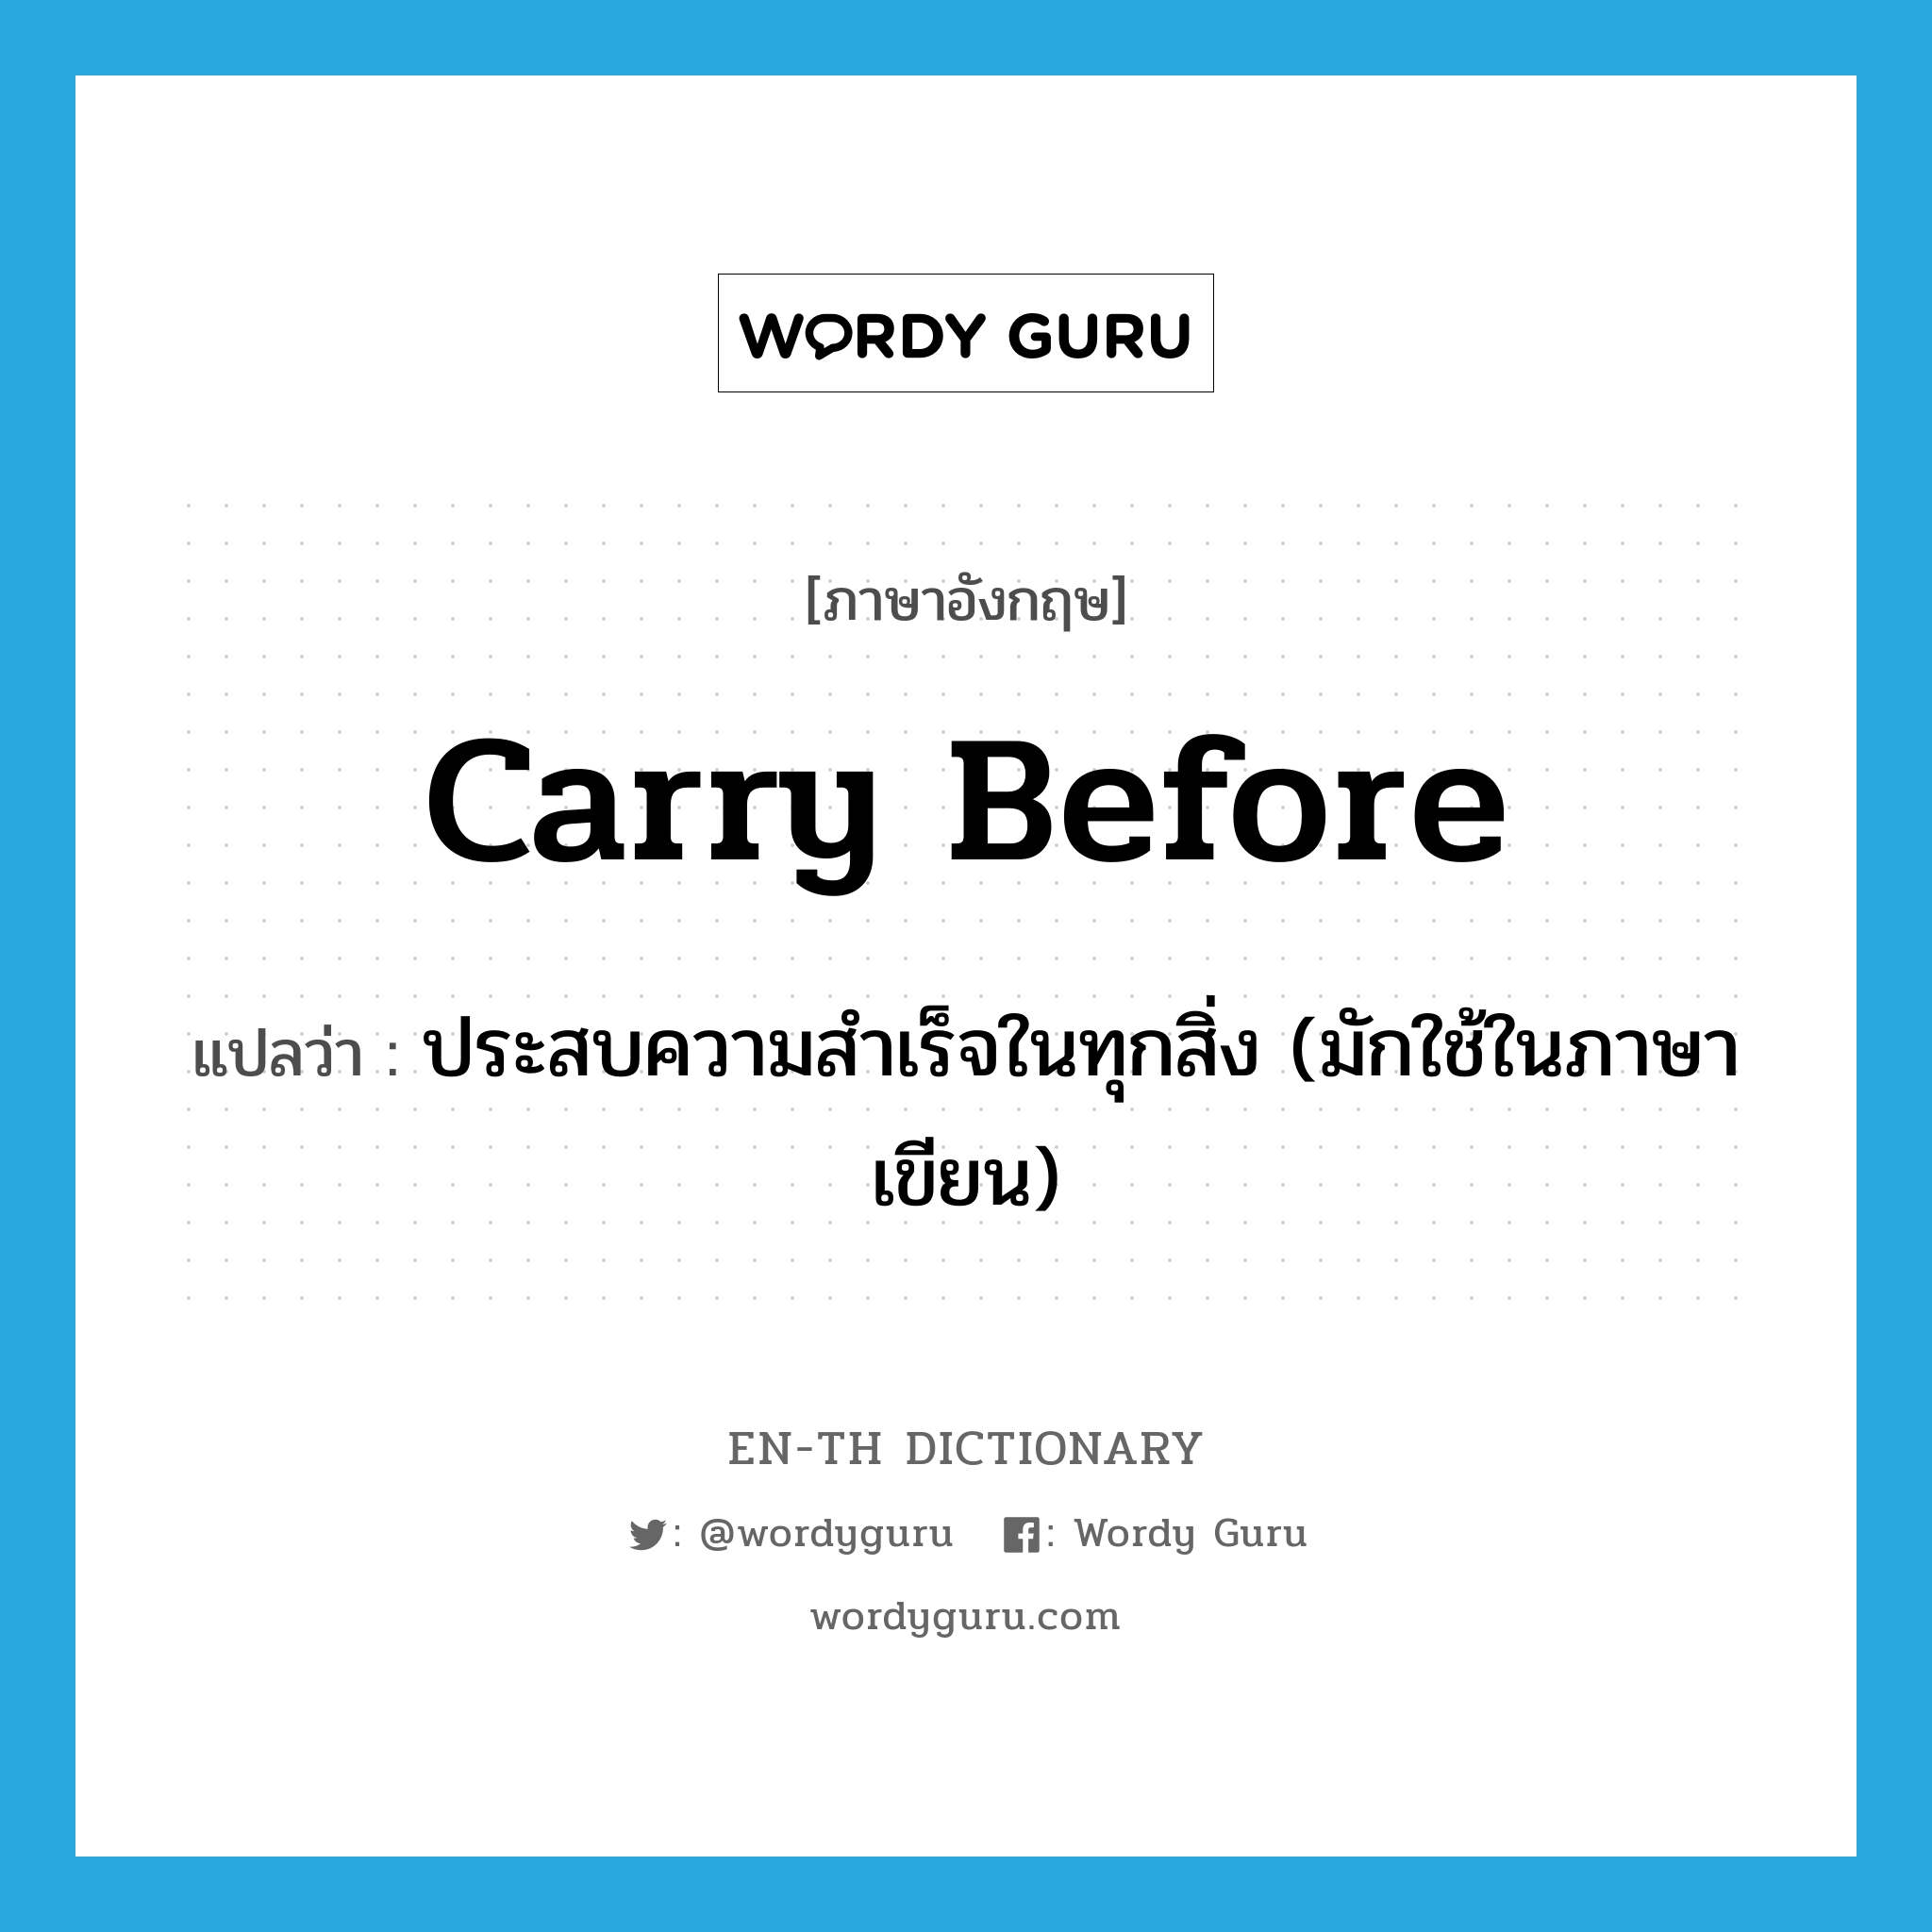 carry before แปลว่า?, คำศัพท์ภาษาอังกฤษ carry before แปลว่า ประสบความสำเร็จในทุกสิ่ง (มักใช้ในภาษาเขียน) ประเภท PHRV หมวด PHRV